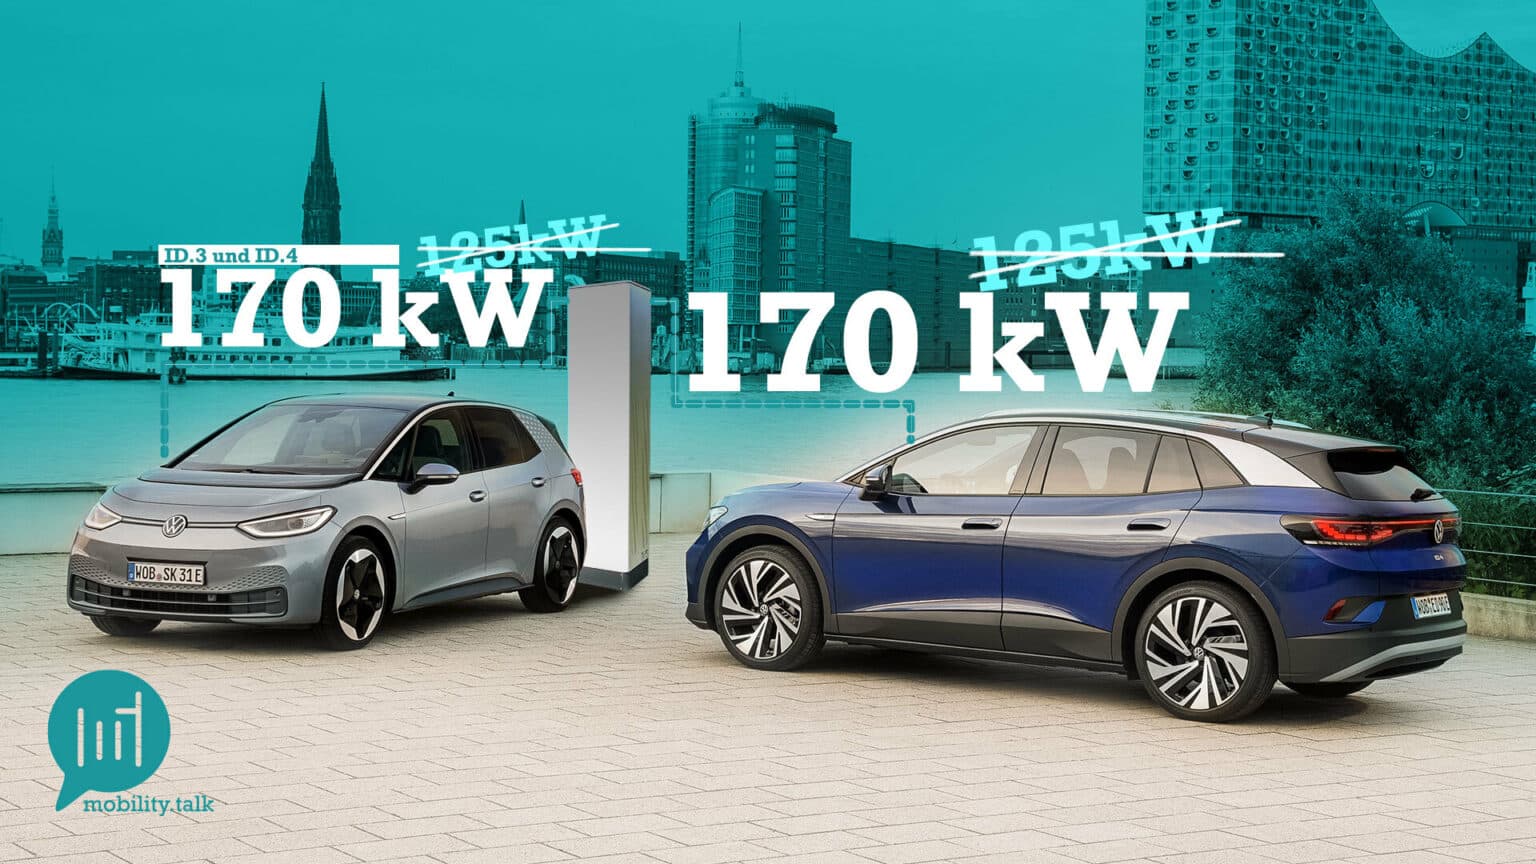 Die ID-Modelle von VW laden künftig schneller: In der Spitze schaffen sie mehr als 170 kW Ladeleistung